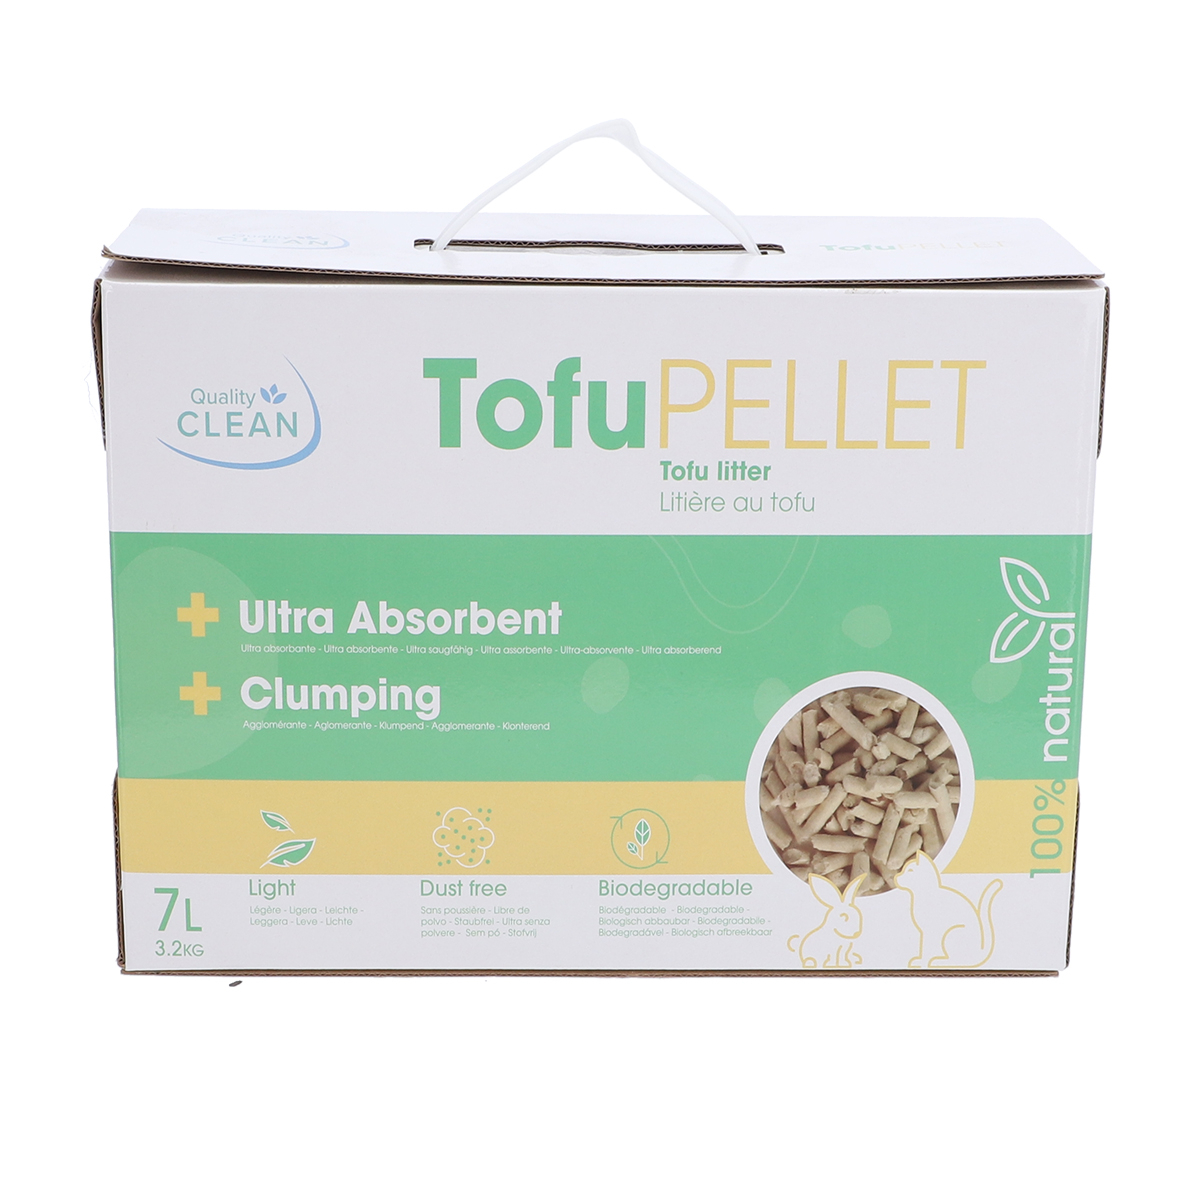 6 Liter 100% Natürliches Katzenstreu Biologisch Abbaubares Katzenstreu Staubfreie und Geruchlose Formel Tofu Katzenstreu Tofu Katzenstreu von Simply Natural 